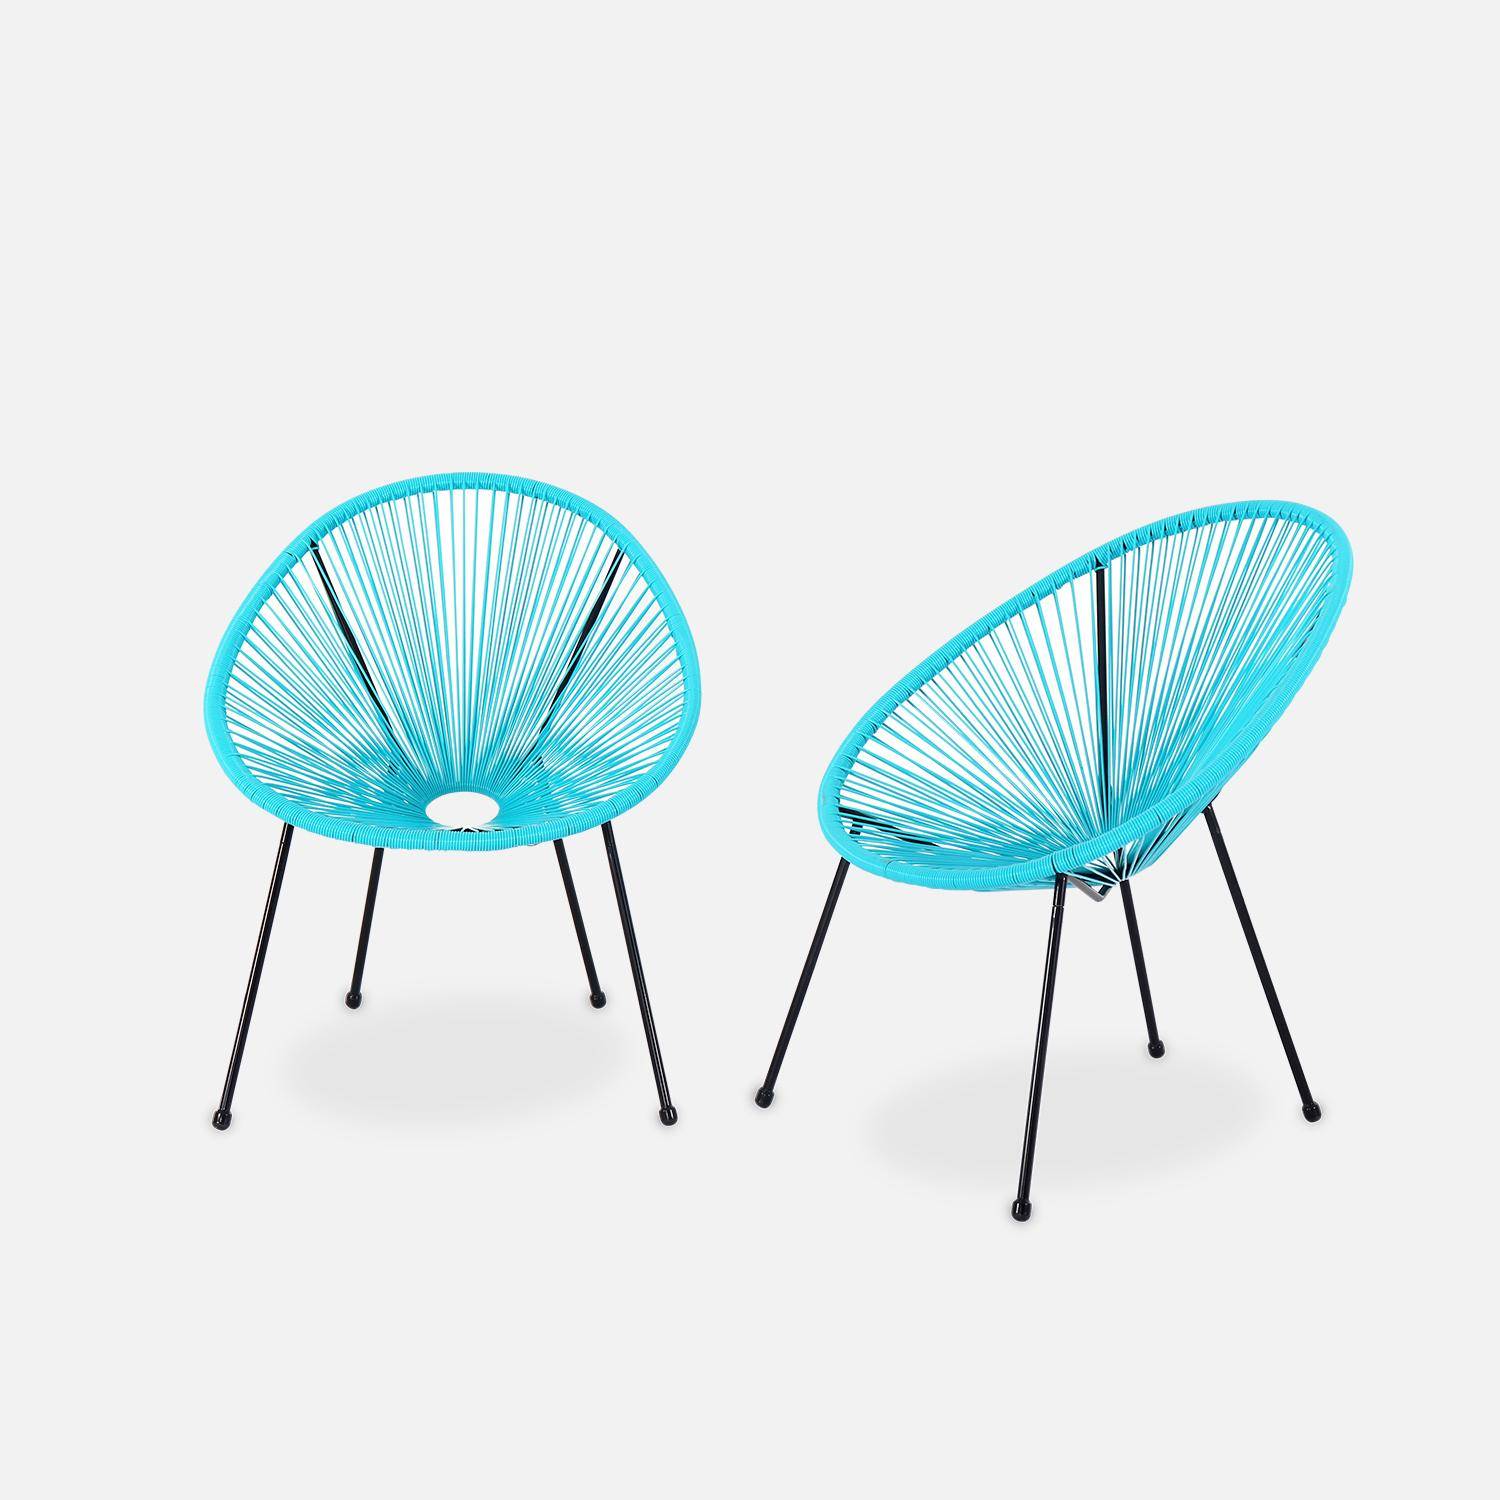 Set van 2 design stoelen ei-vormig - Acapulco Turkoois  - Stoelen 4 poten retro design, plastic koorden, binnen/buiten Photo1